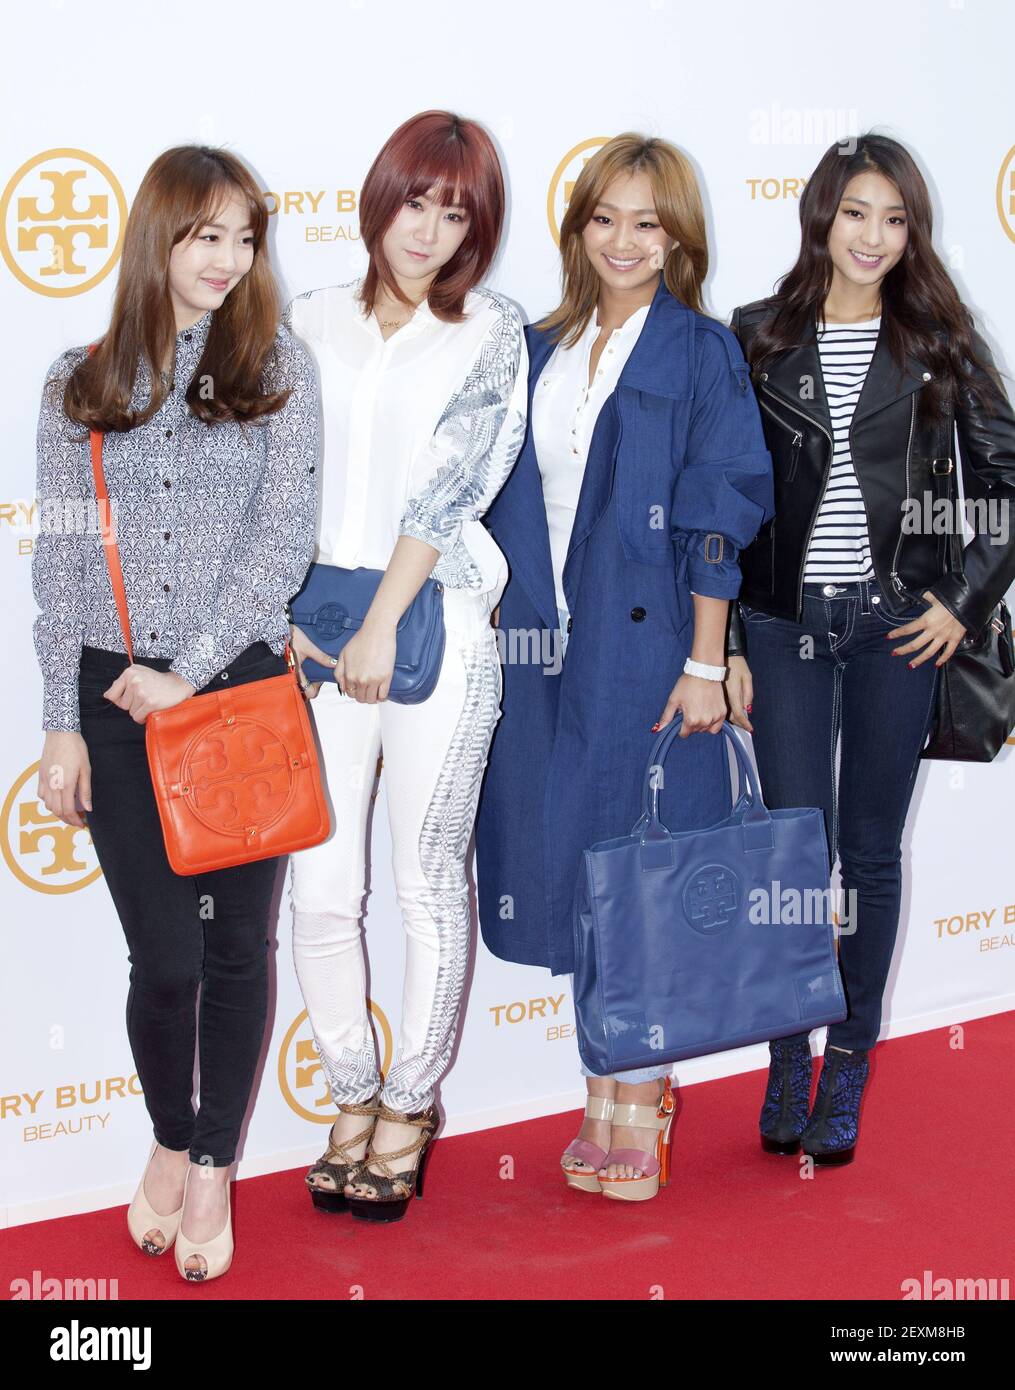 26 Febrero 2014 - Seúl, Corea del Sur: Grupo de niñas surcoreanas K-Pop  Sistar, asista a una foto para la Marca de moda estadounidense Tory Burch  evento de lanzamiento de perfumes en